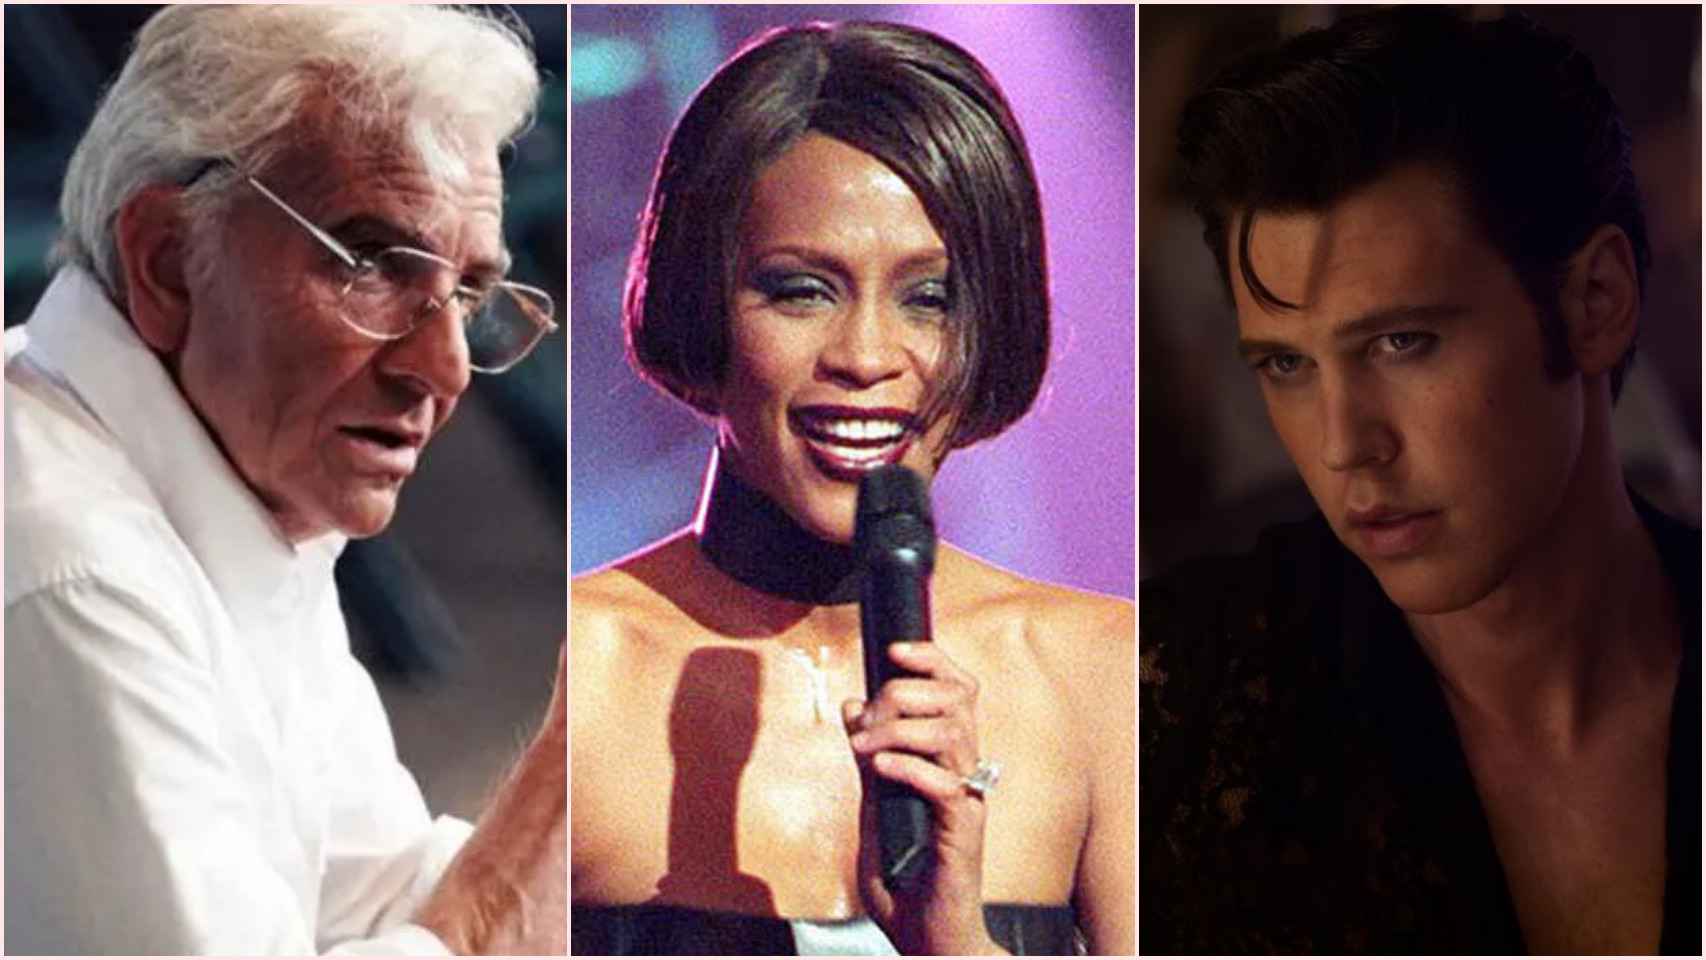 De Whitney Houston a Elvis Presley: las 12 películas sobre músicos que veremos próximamente.